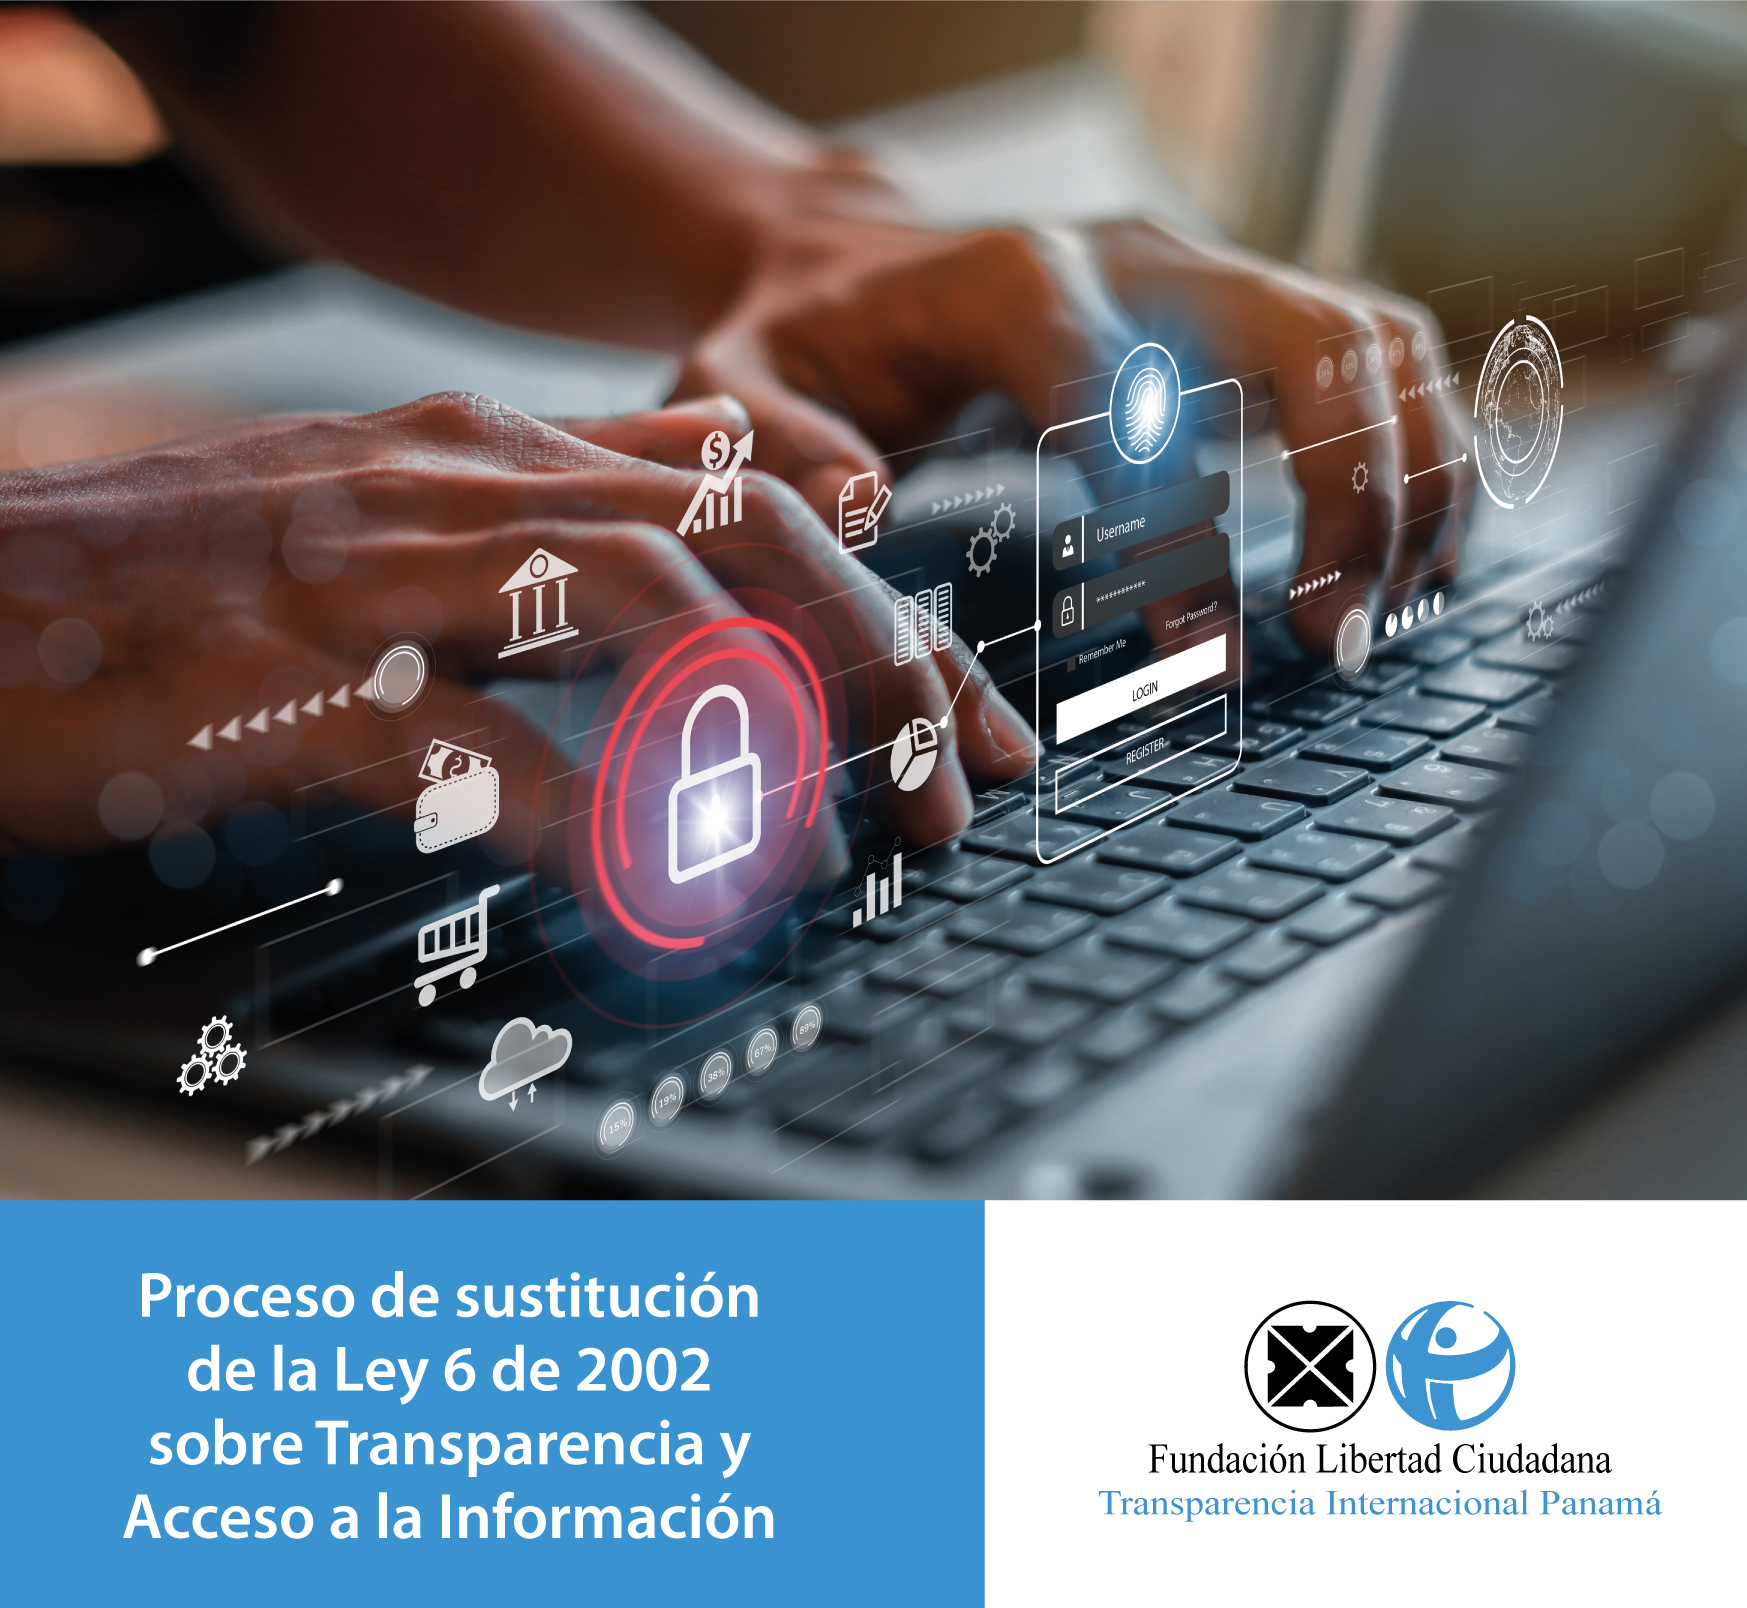 Capítulos latinoamericanos de Transparencia Internacional  hacen un llamado al Gobierno de la República de Panamá, en relación al  proceso de sustitución de la Ley 6 de 2002 sobre Transparencia y Acceso a la Información.